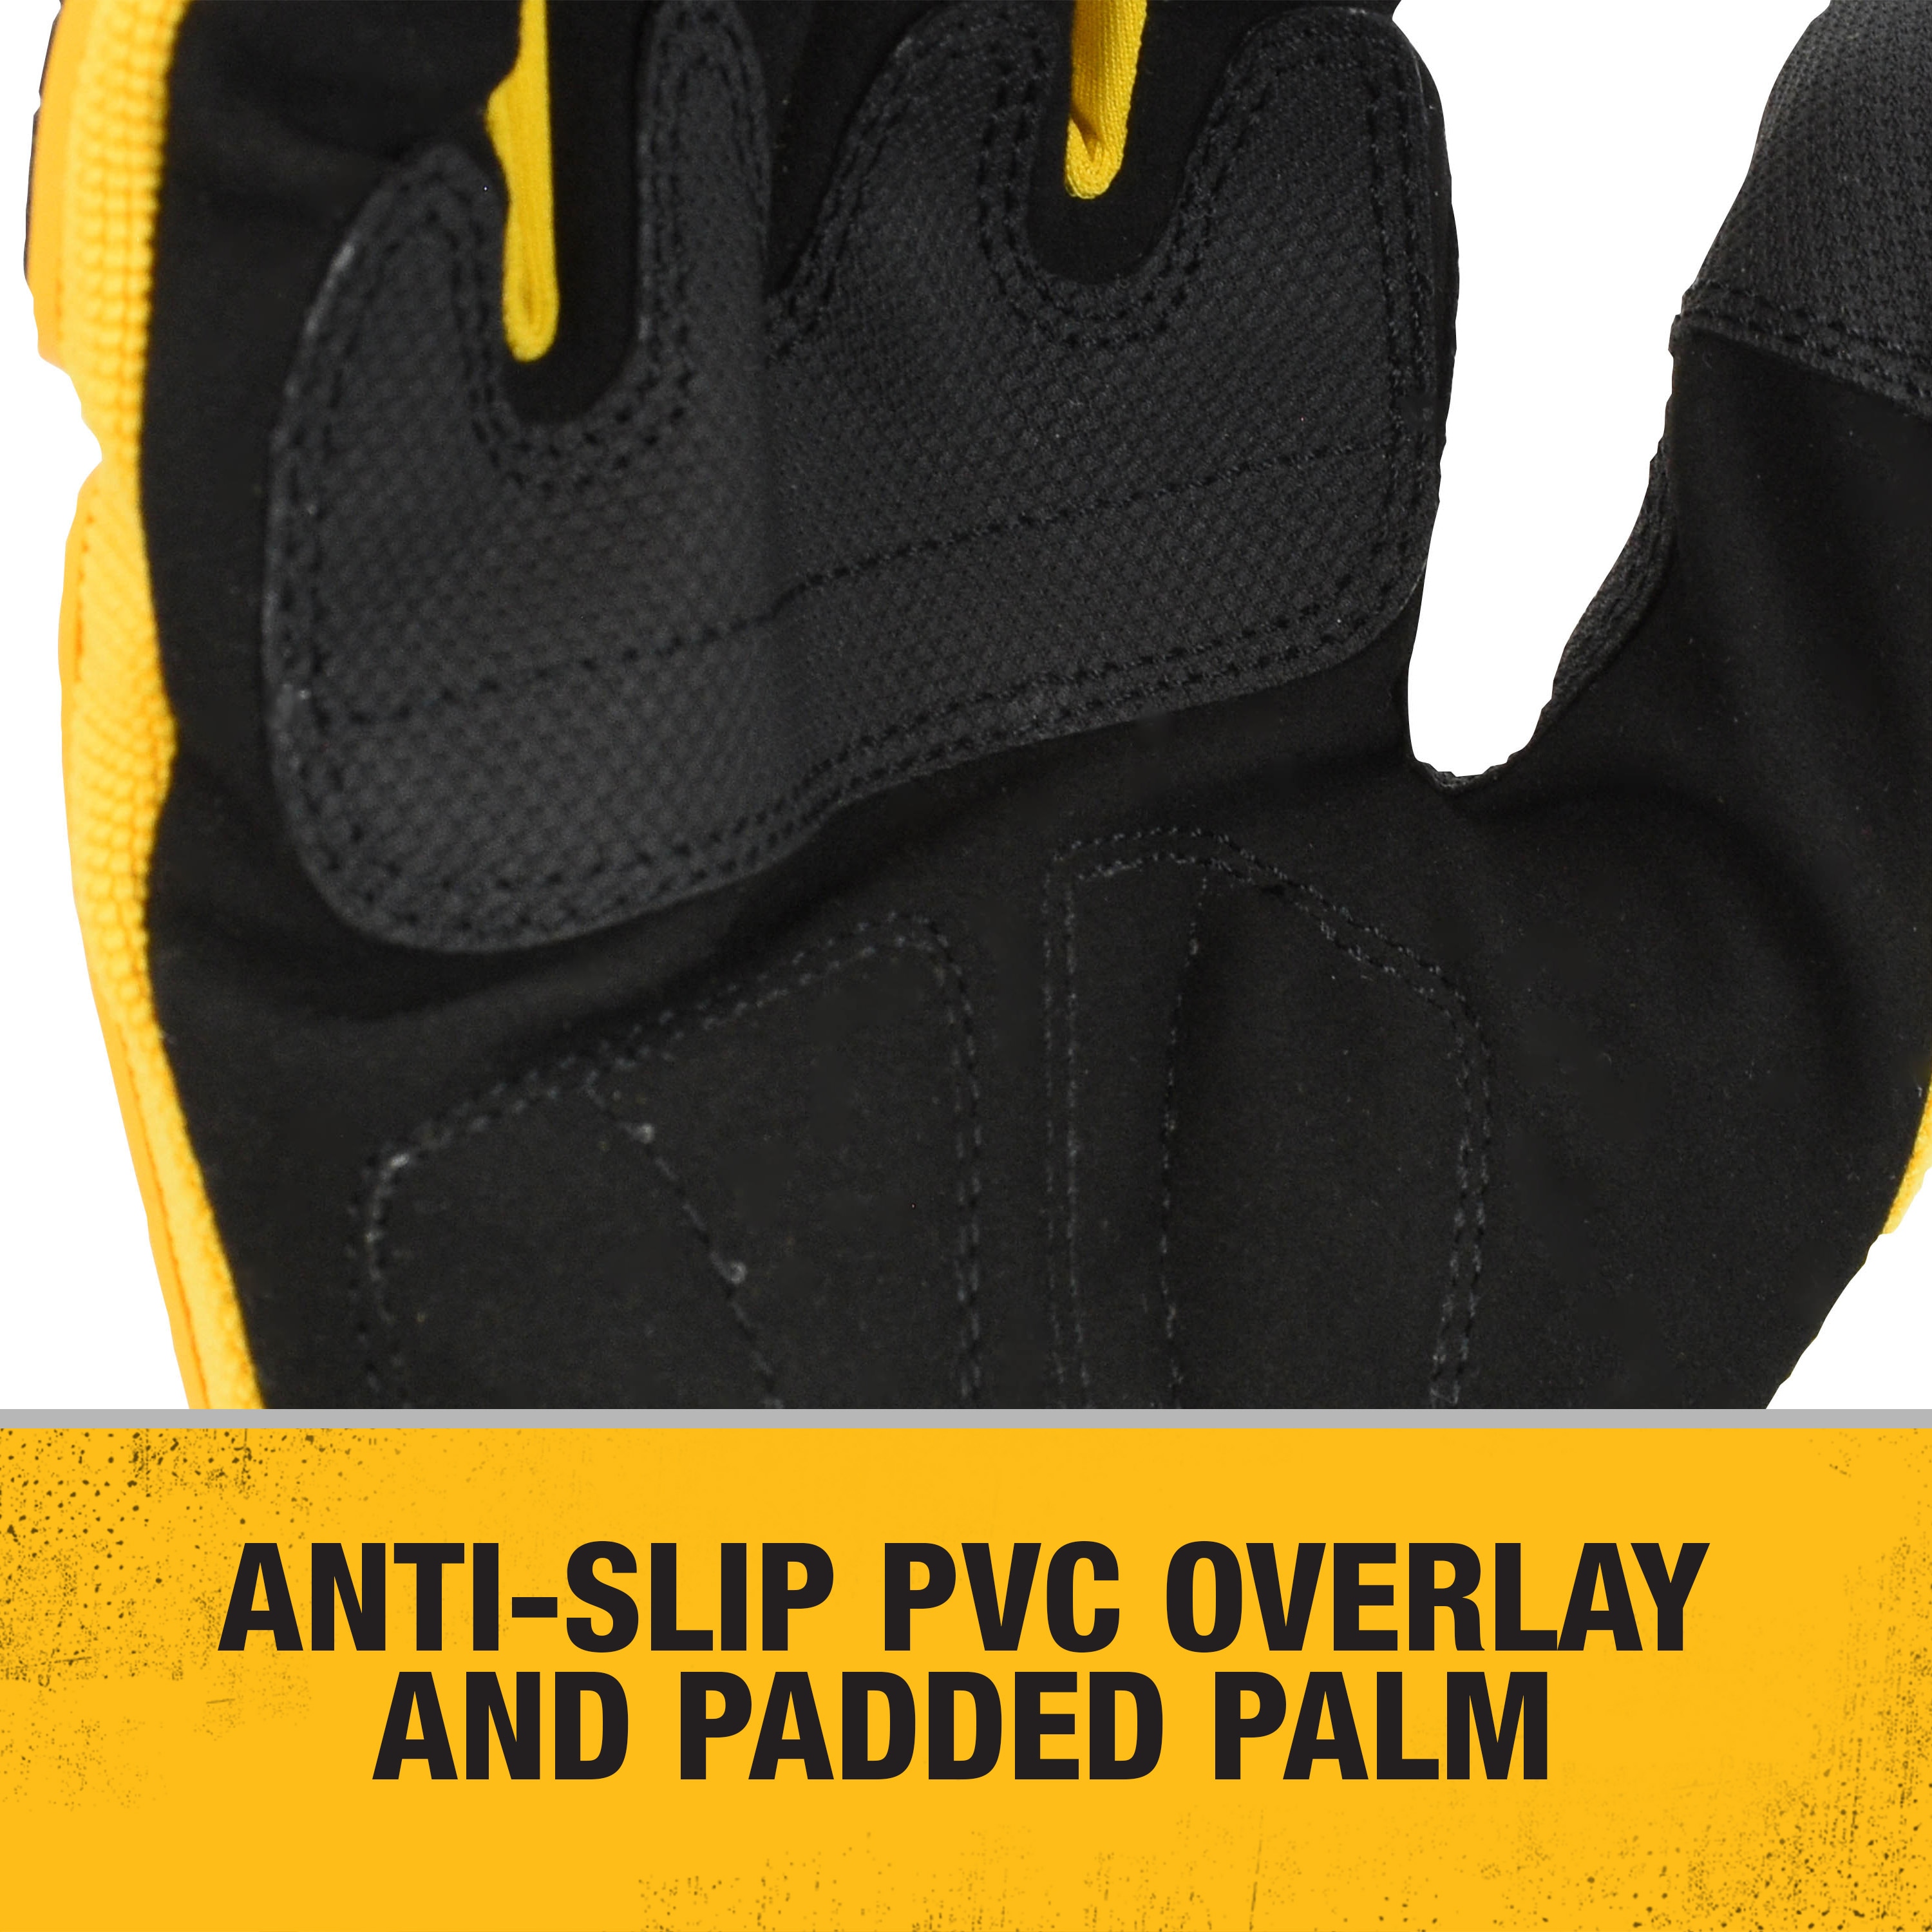 DEWALT X-large PVC Mechanical Repair Gloves, (1-Pair) in the Work